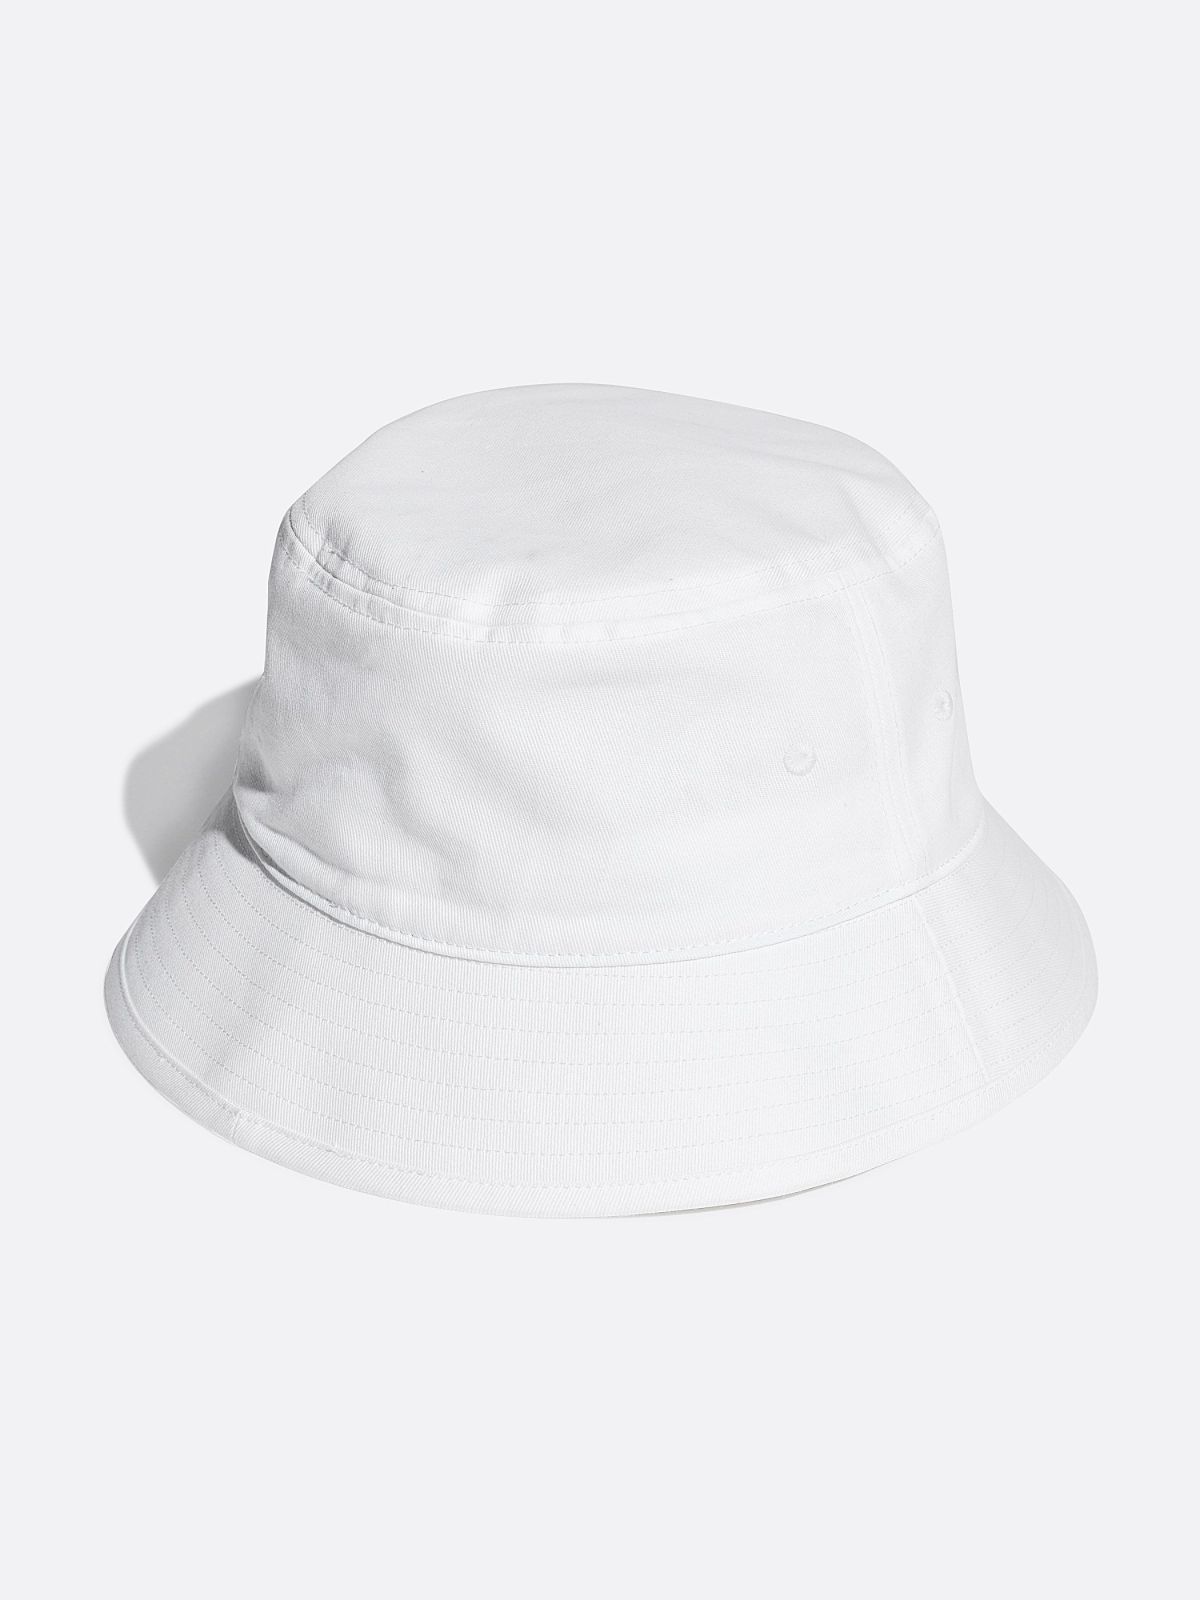  כובע באקט בשילוב לוגו / גברים של ADIDAS Originals